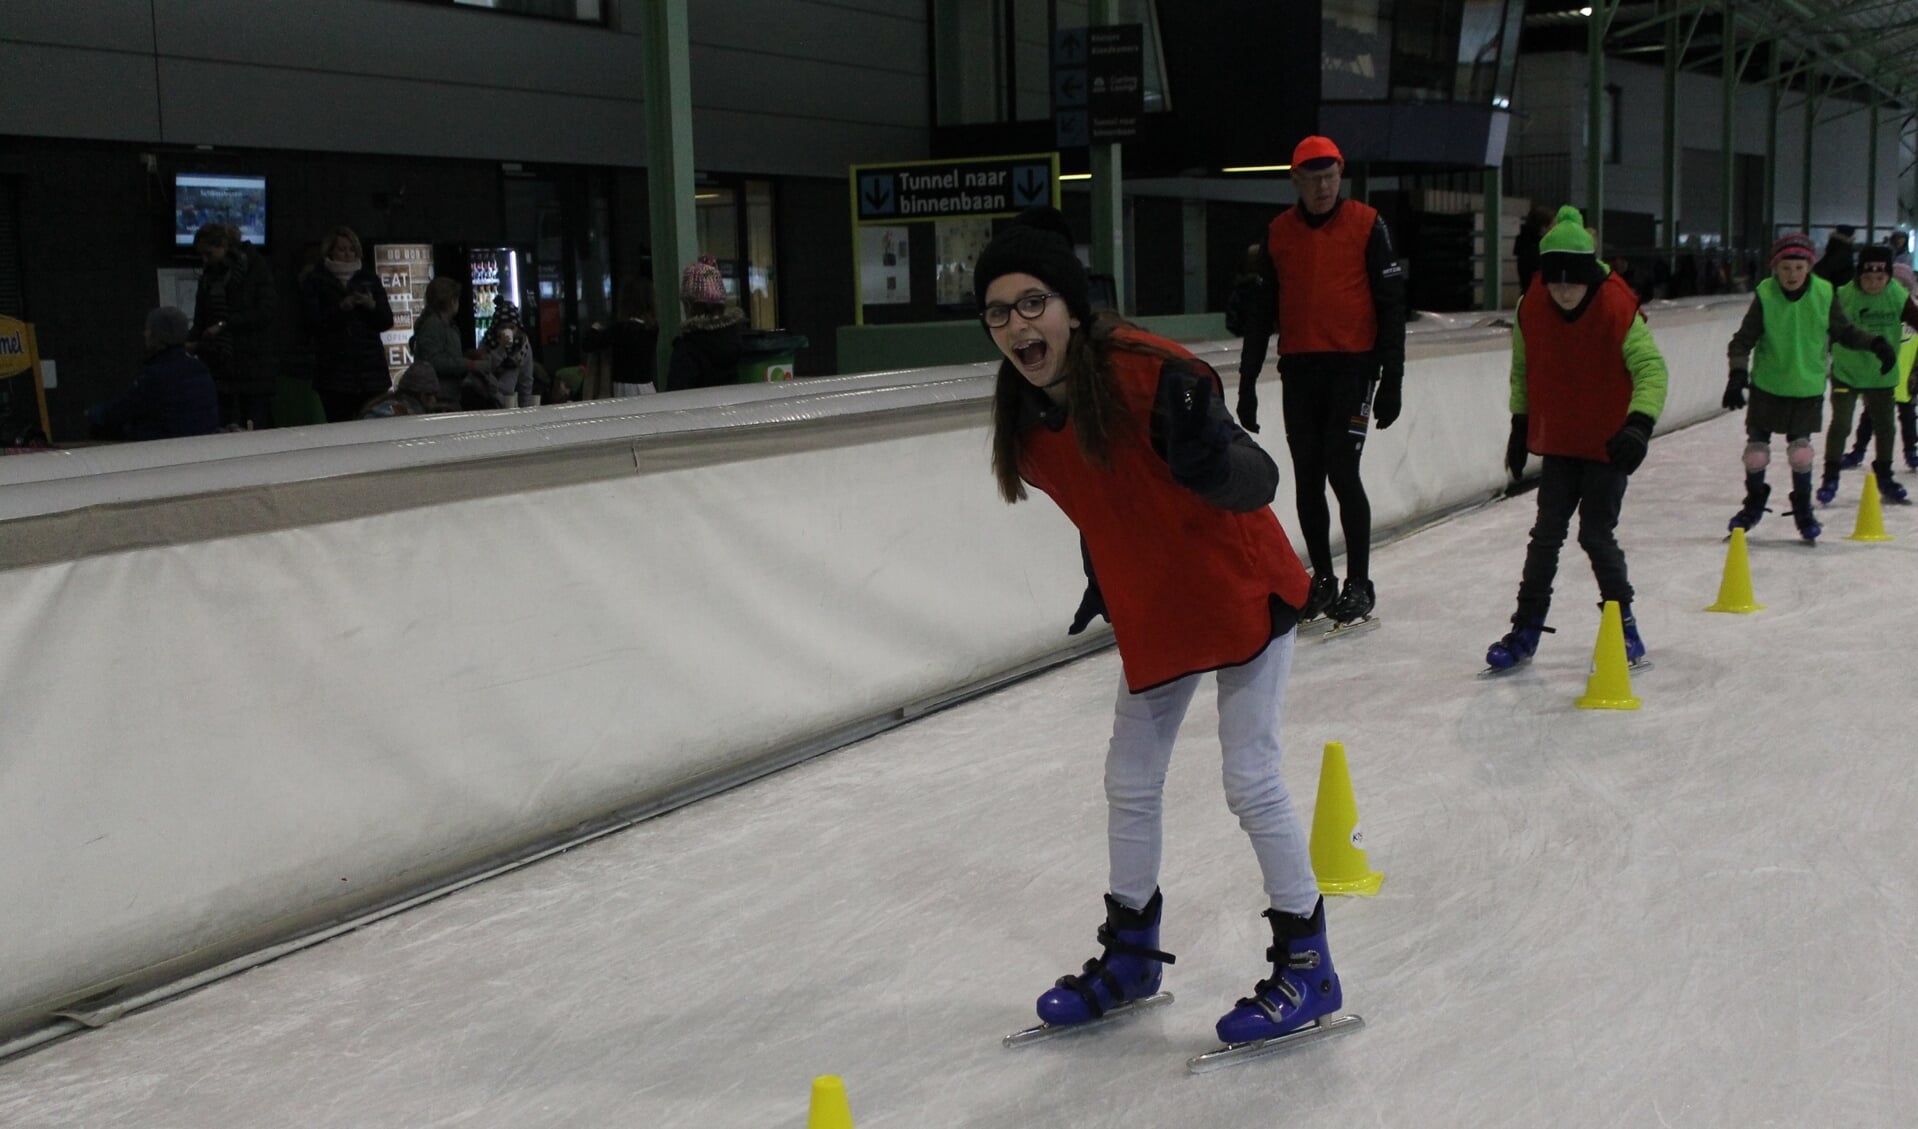 Deze jongedame beleeft duidelijk veel plezier aan de schaatslessen. Foto: PR